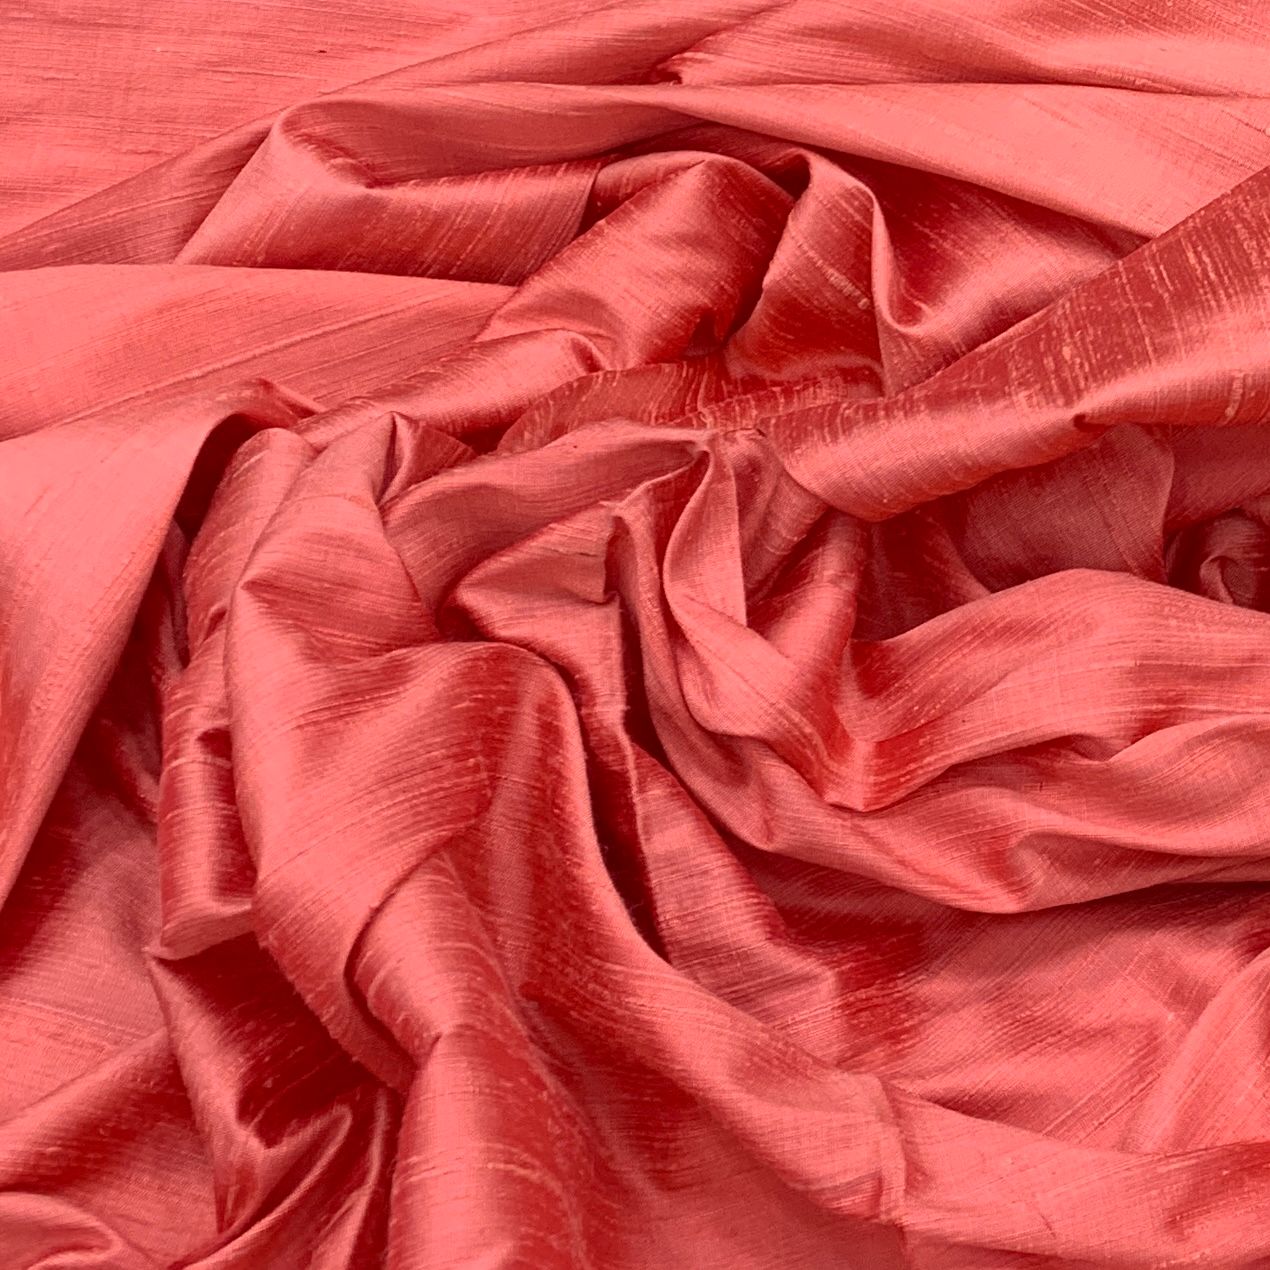 Peach Plain Raw Silk Fabric